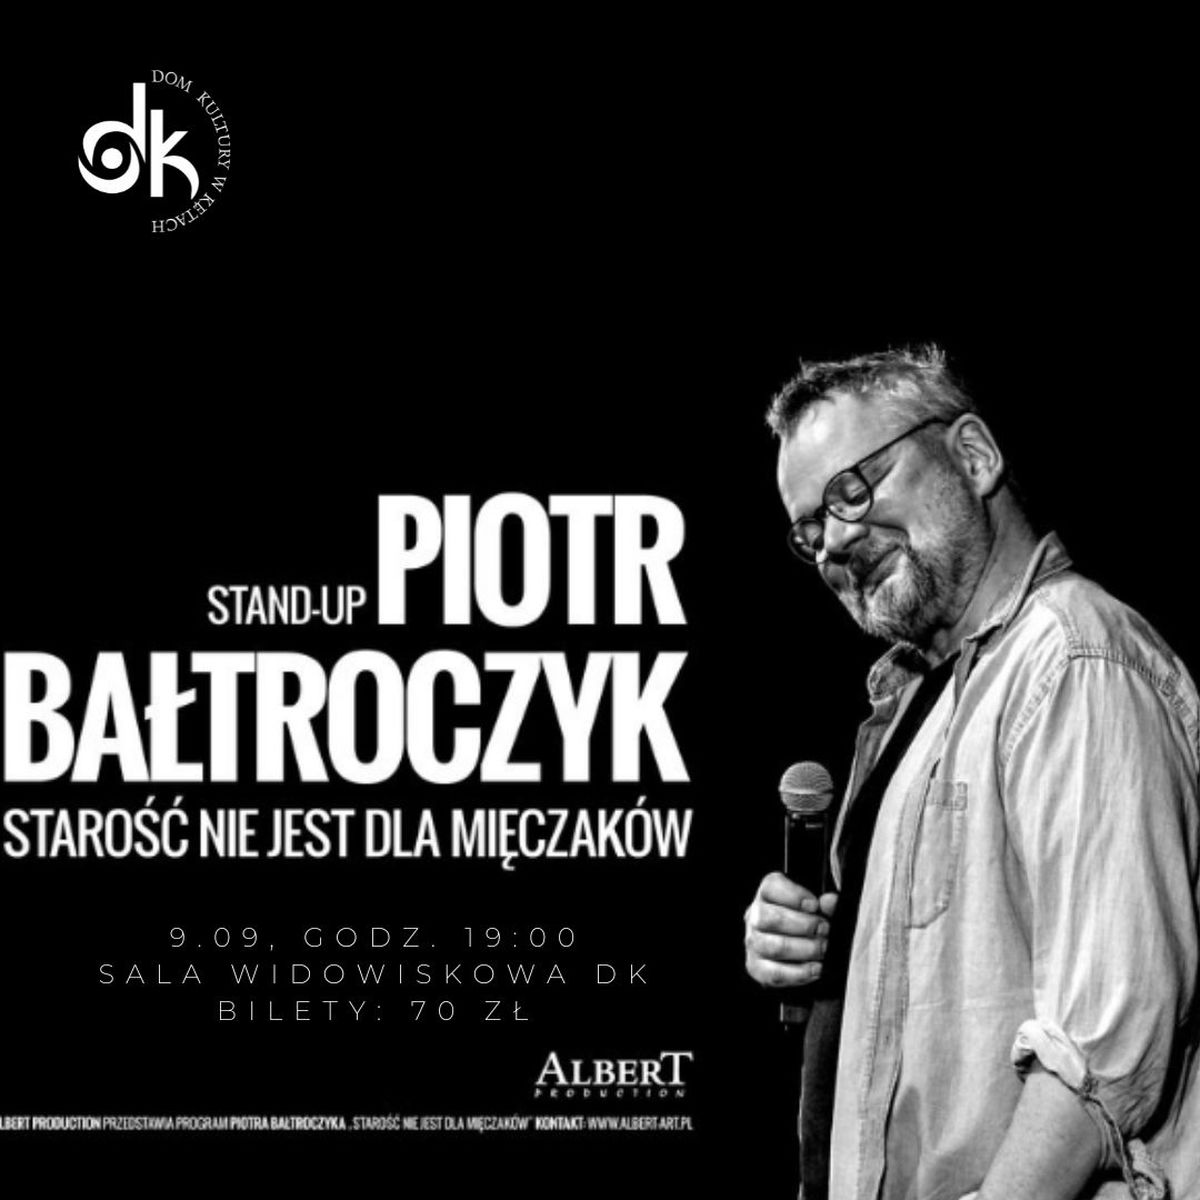 Warsztaty wokalne i Piotr Bałtroczyk w Domu Kultury w Kętach